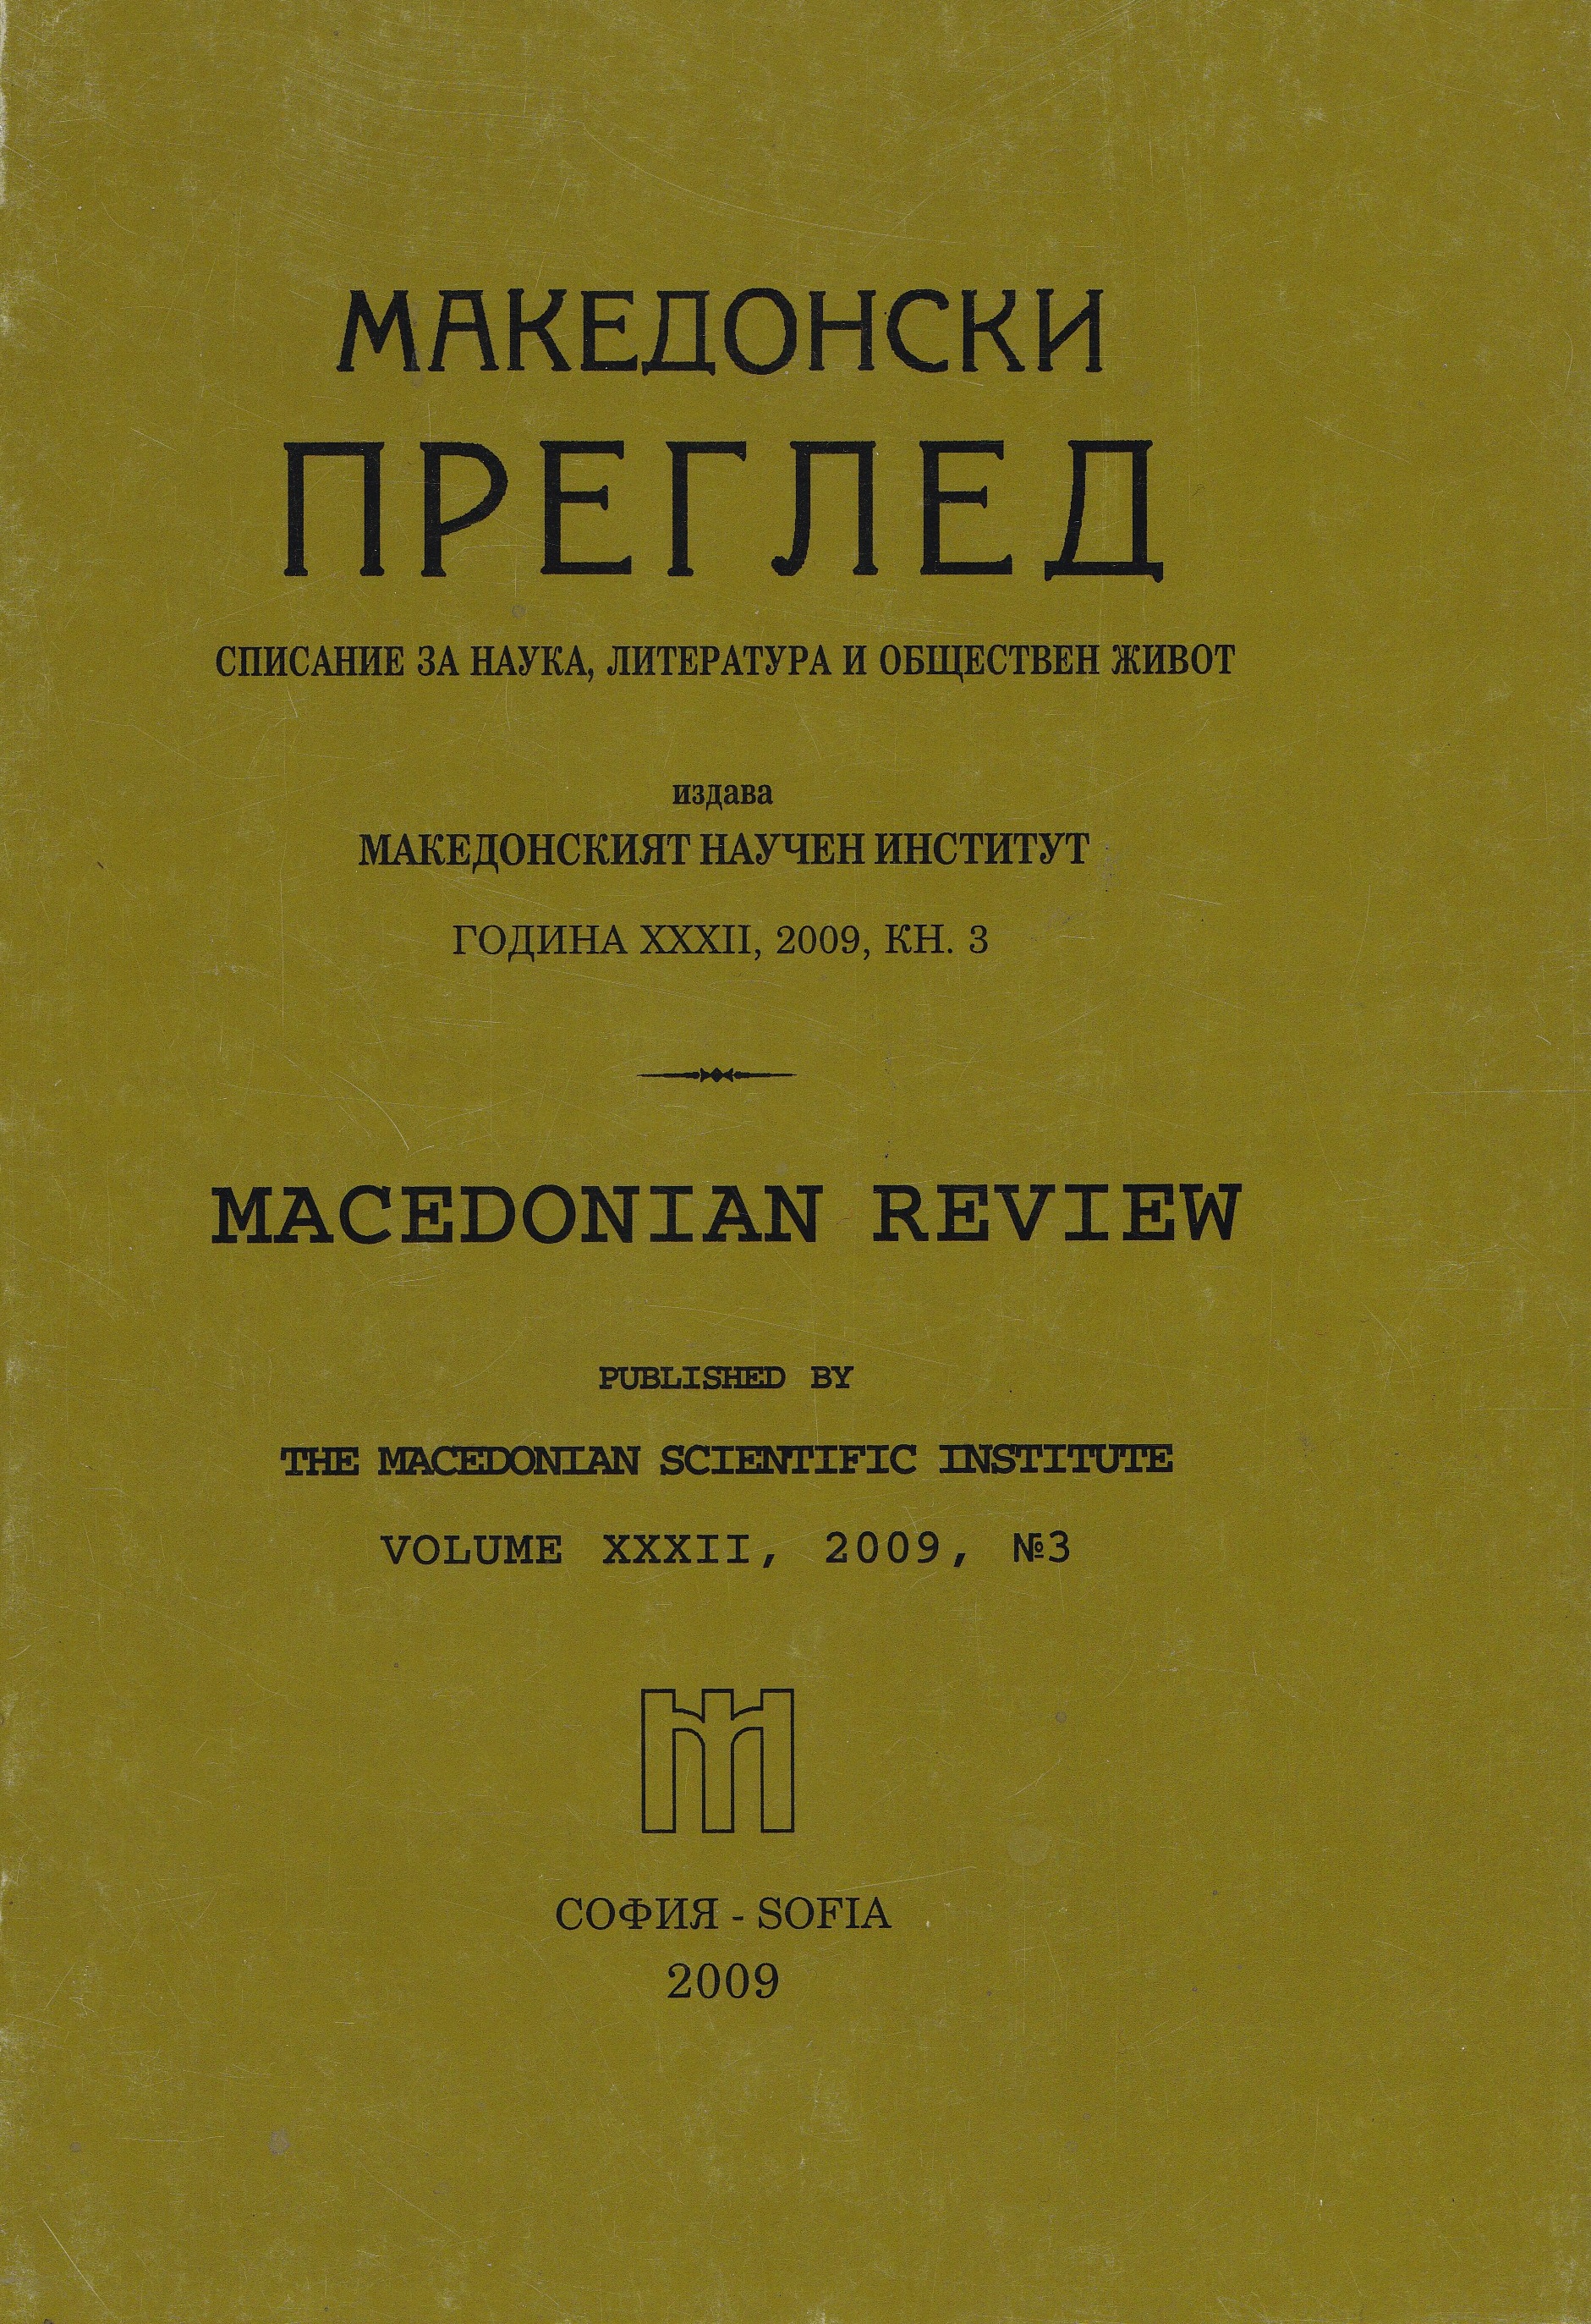 Животописни бележки на/за участници в македоно-одринското революционно движение и войните за национално обединение (1895-1918 г.)